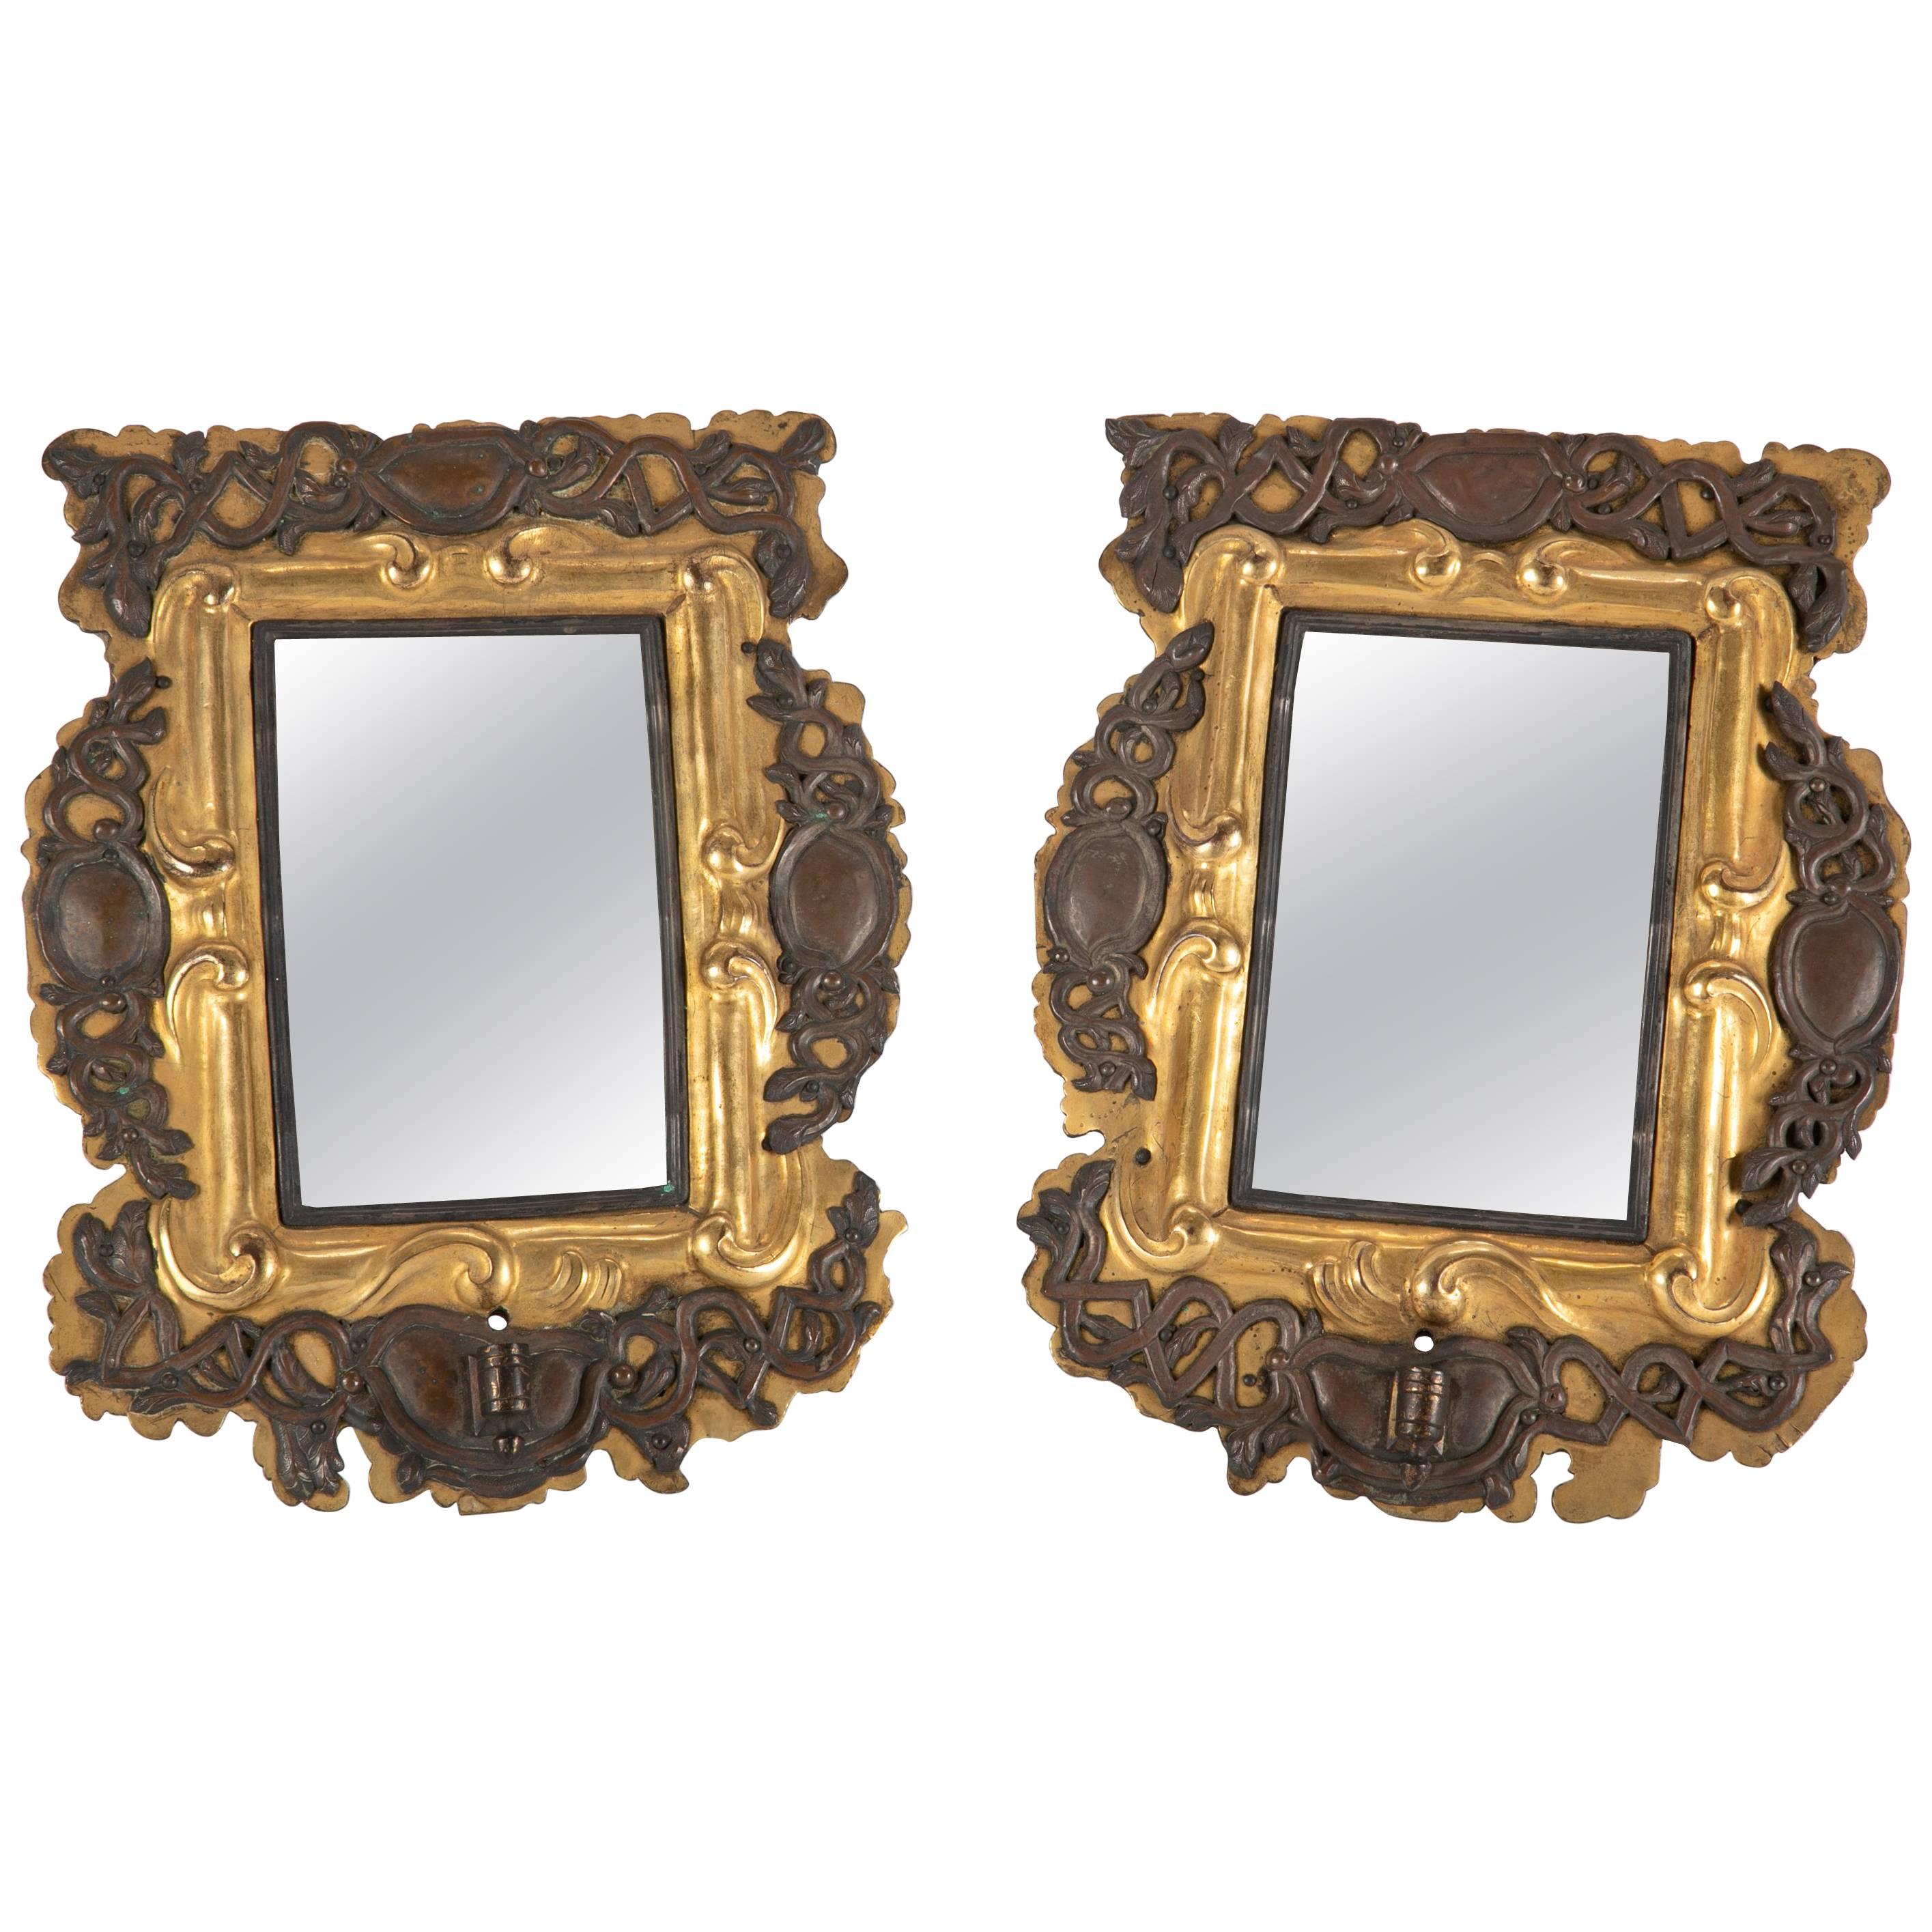 Paar baltische Spiegelleuchter aus vergoldetem Messing und Silber aus dem 18. Jahrhundert